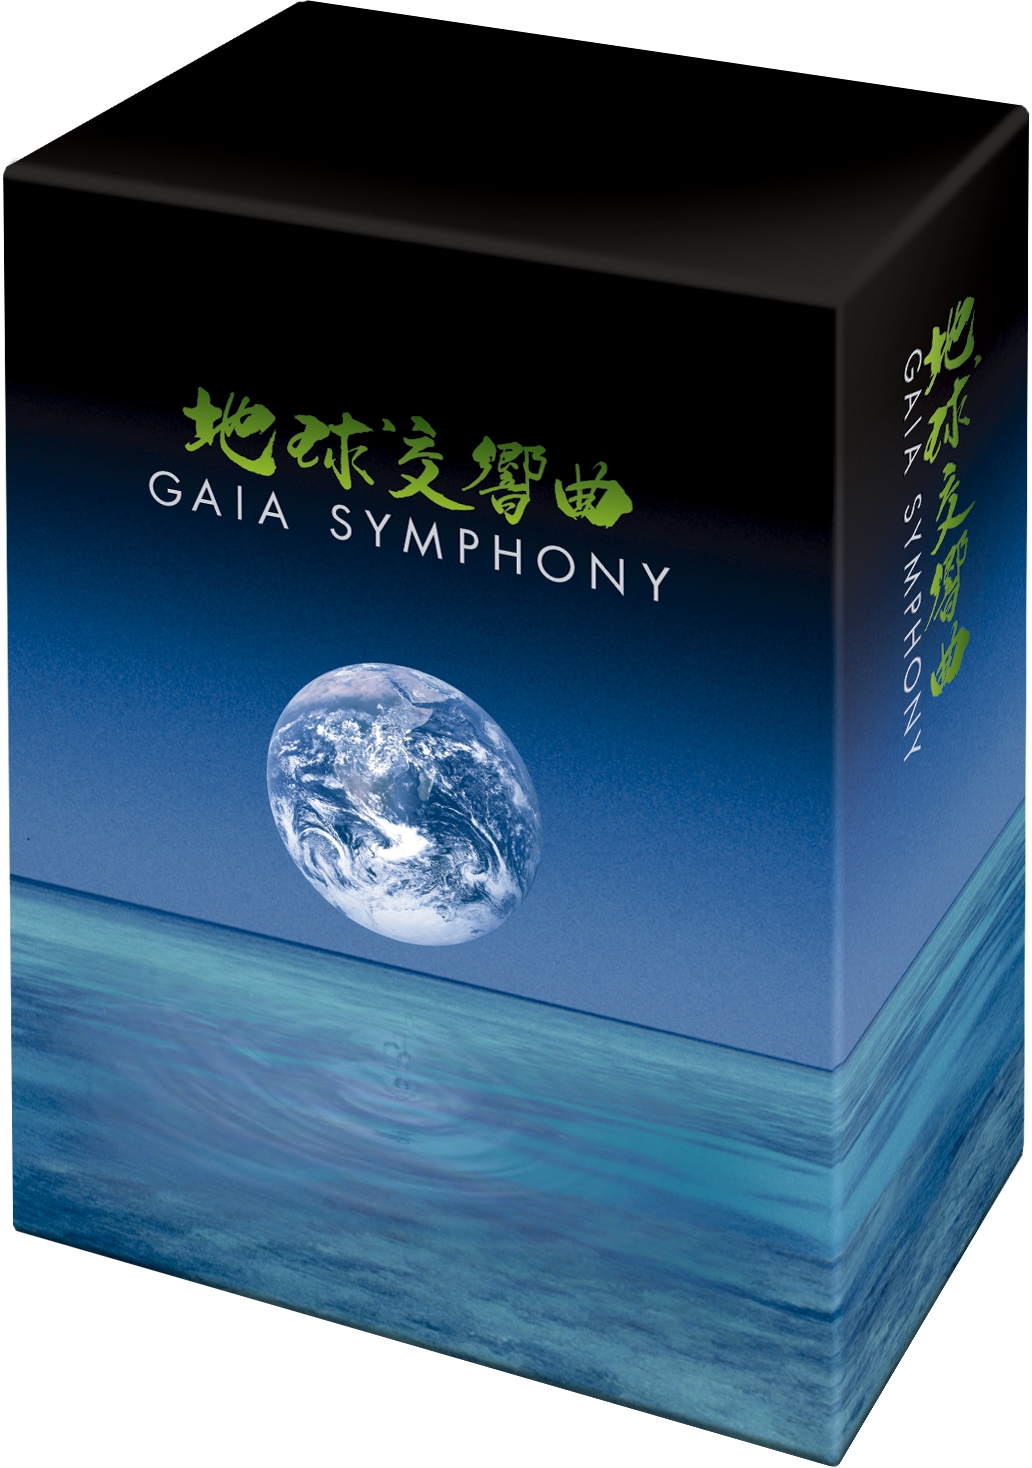 地球交響曲DVD-BOXスペシャルパッケージ プレスリリース